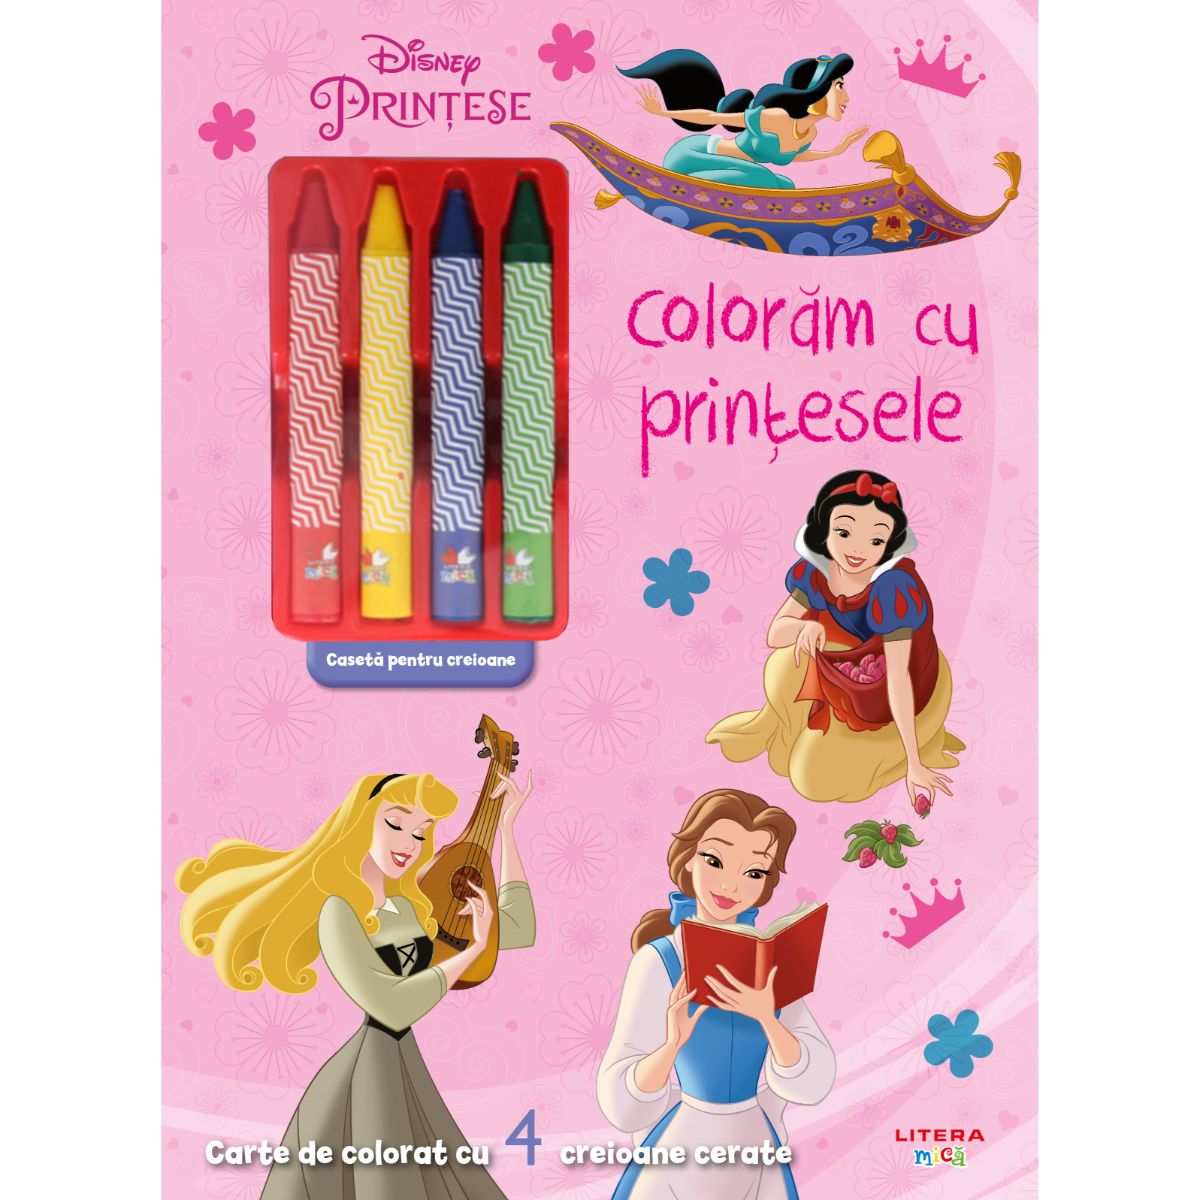 Disney Printese, Coloram cu printesele, Carte de colorat cu 4 creioane cerate, Reeditare